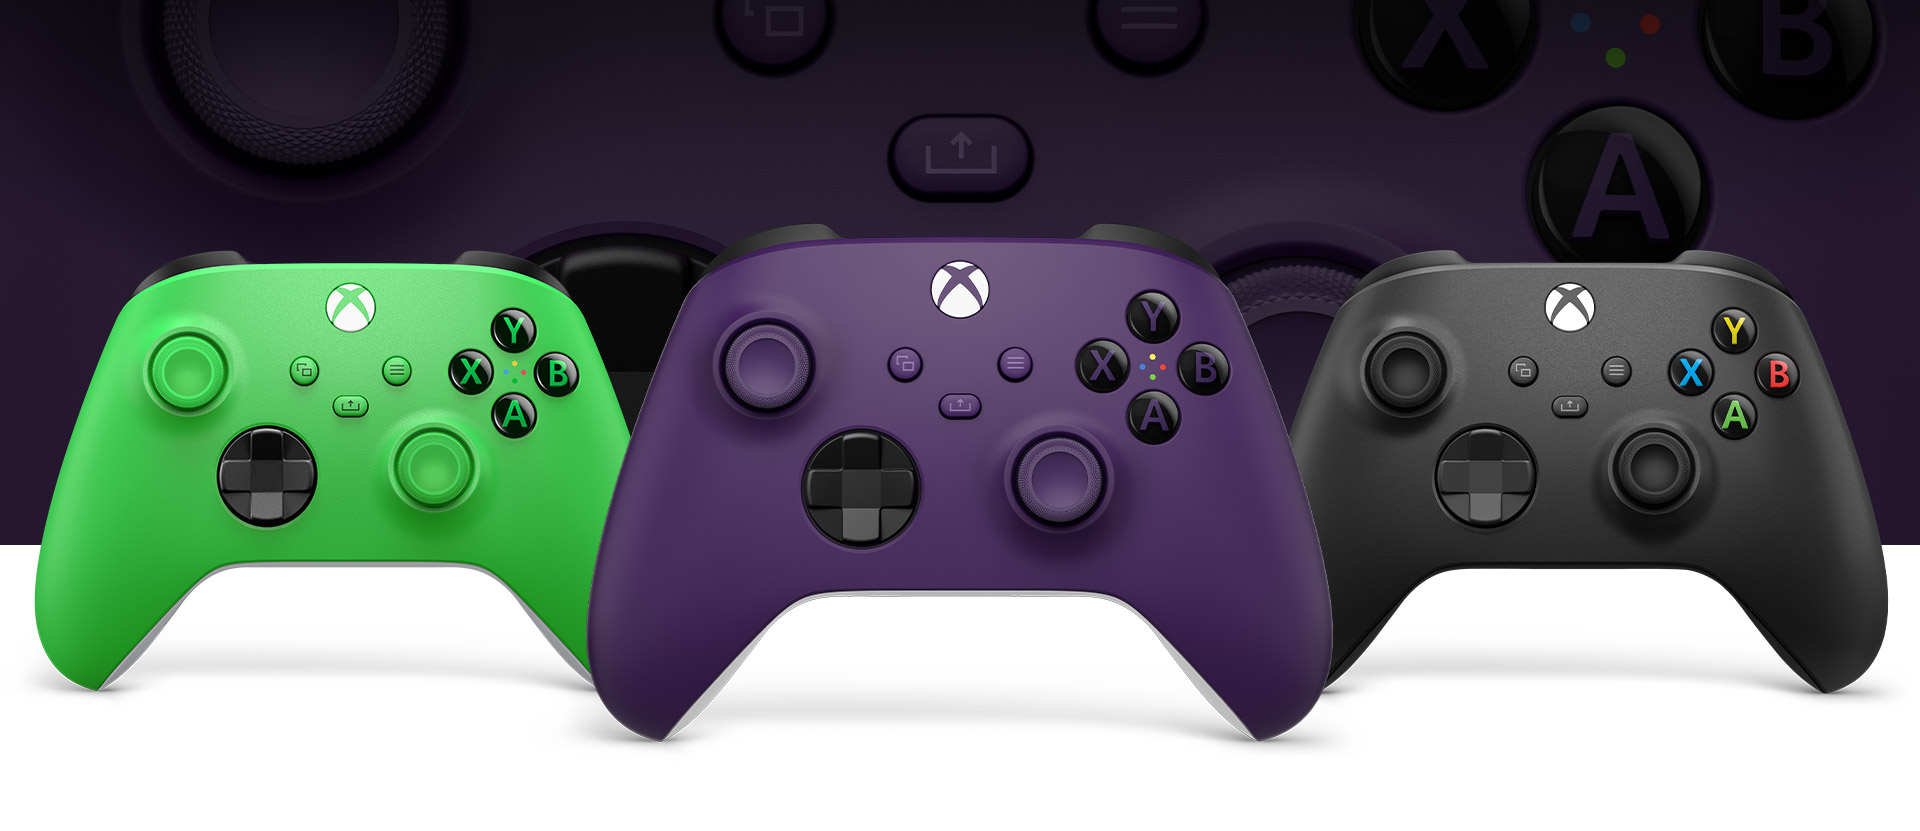 Mando Xbox en púrpura delante, con un mando de color verde a la izquierda y un mando de color negro carbón a la derecha